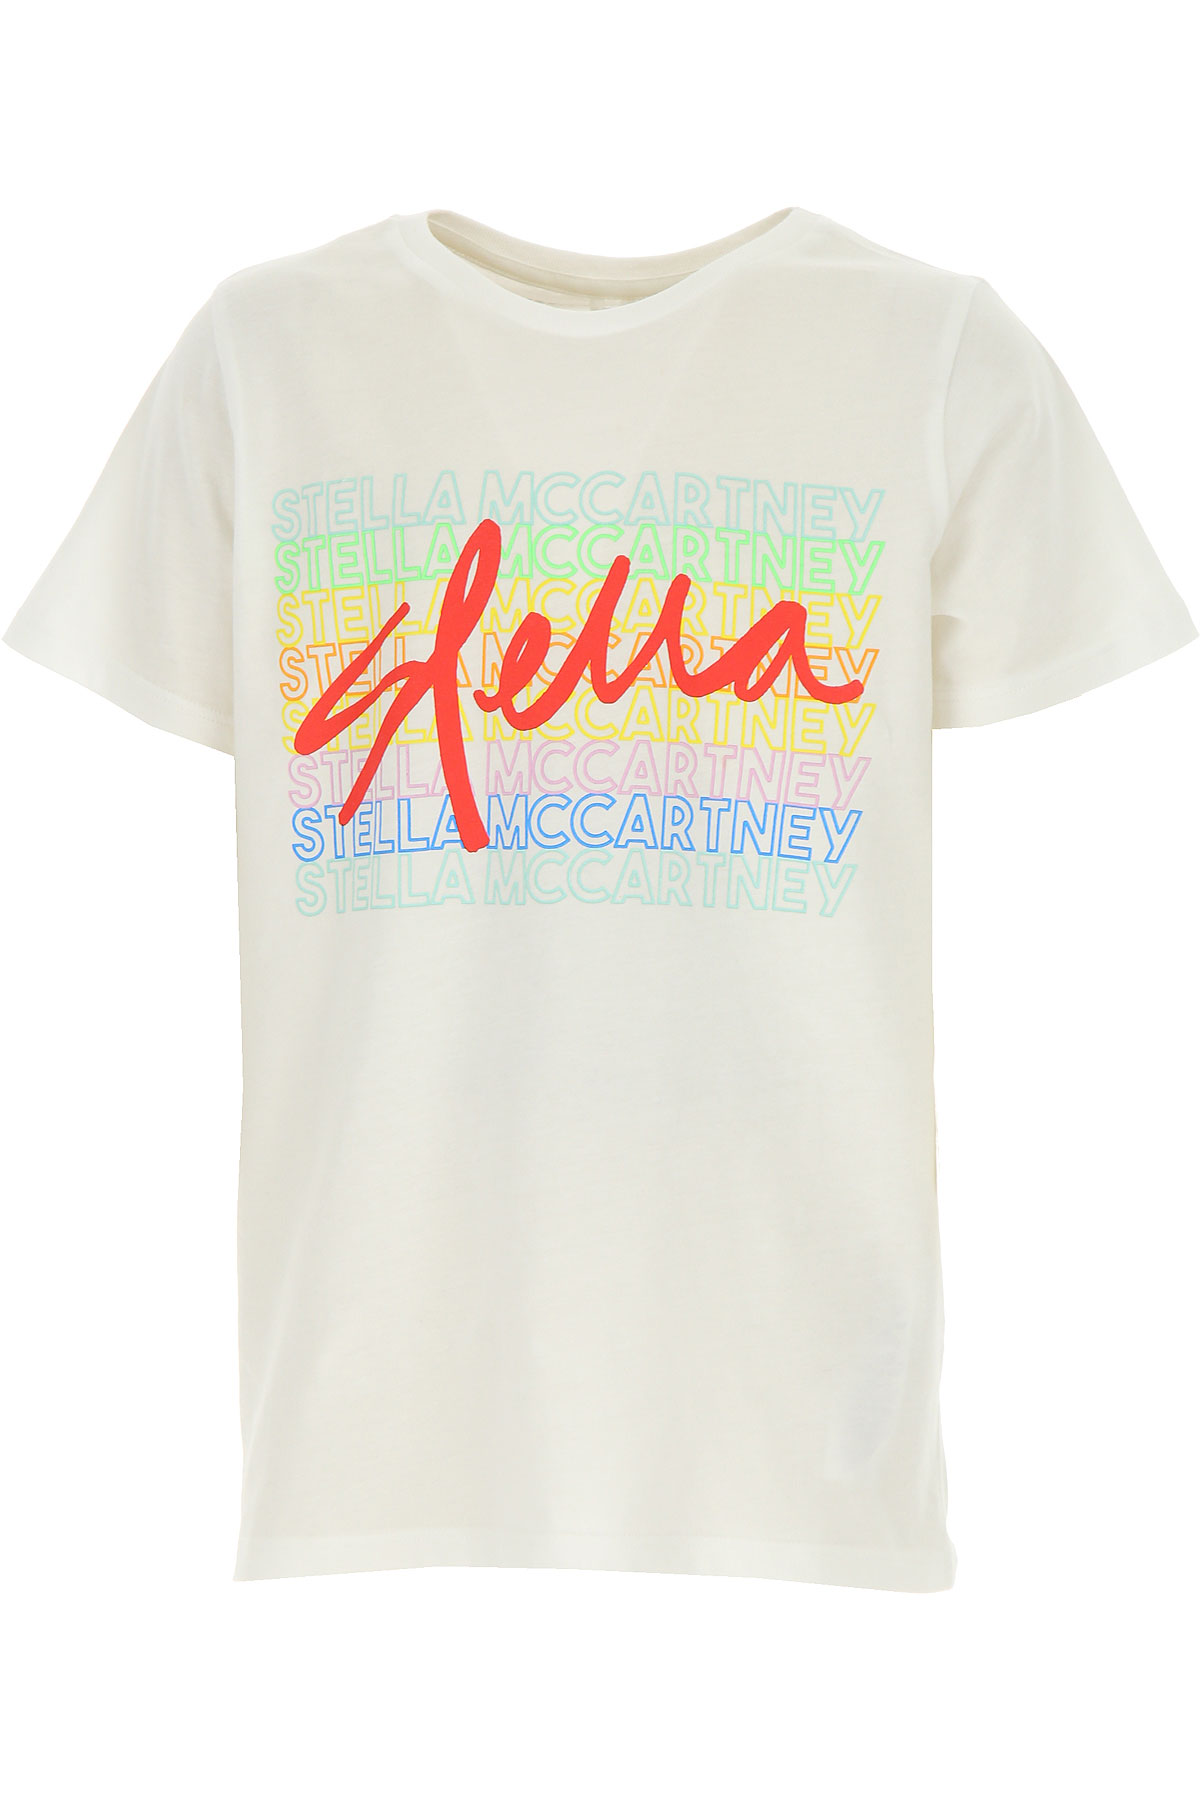 Stella McCartney Kinder T-Shirt für Mädchen Günstig im Outlet Sale, Weiss, Baumwolle, 2017, 6Y 8Y